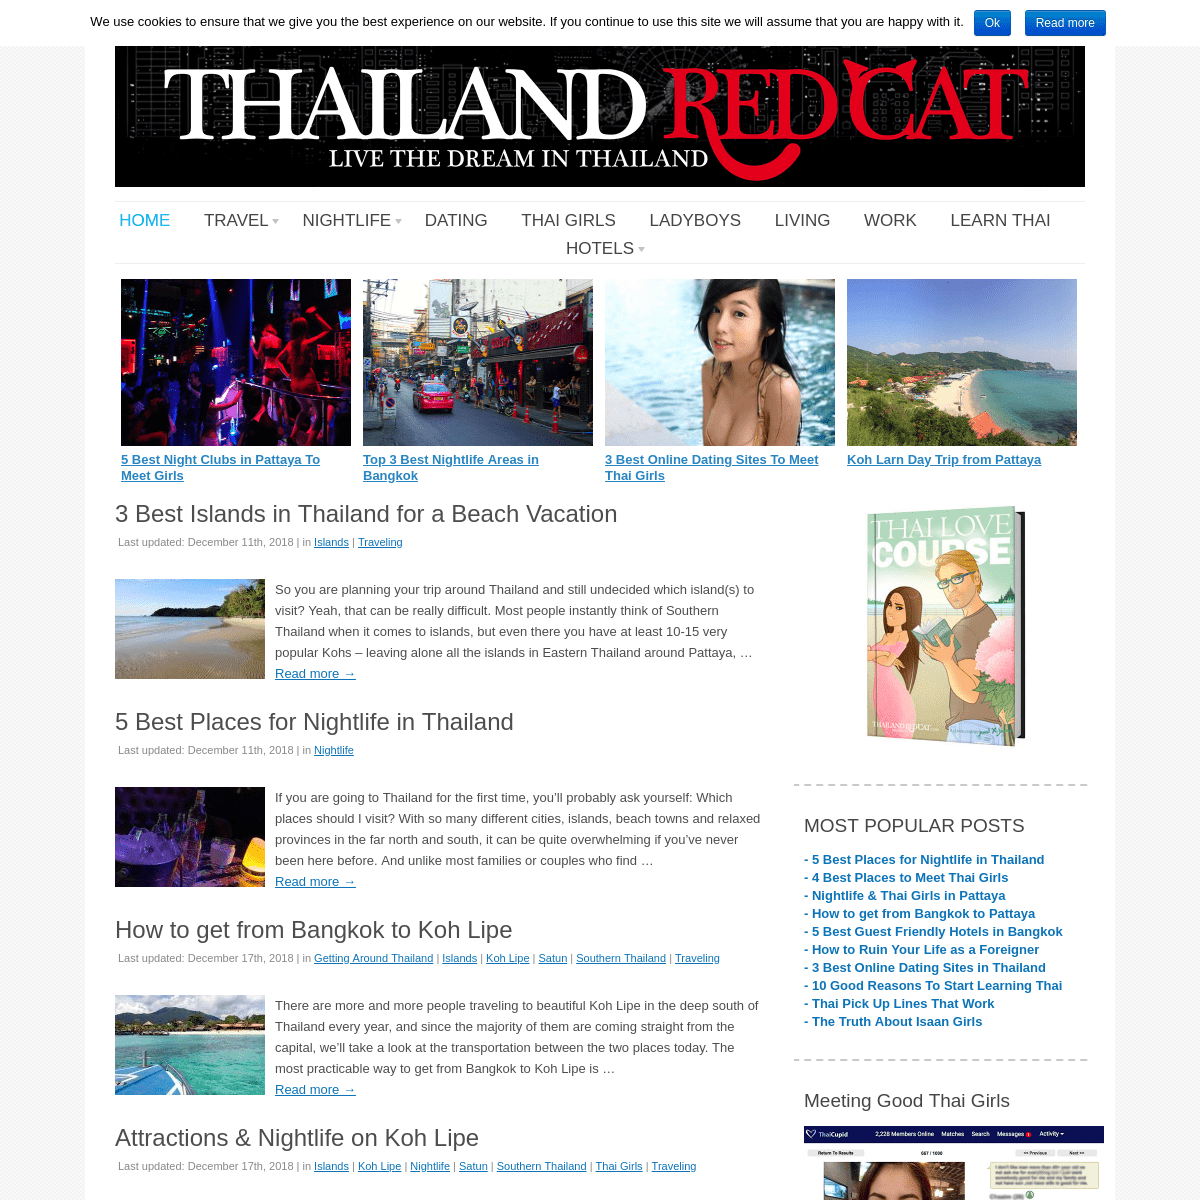 Thailand Redcat